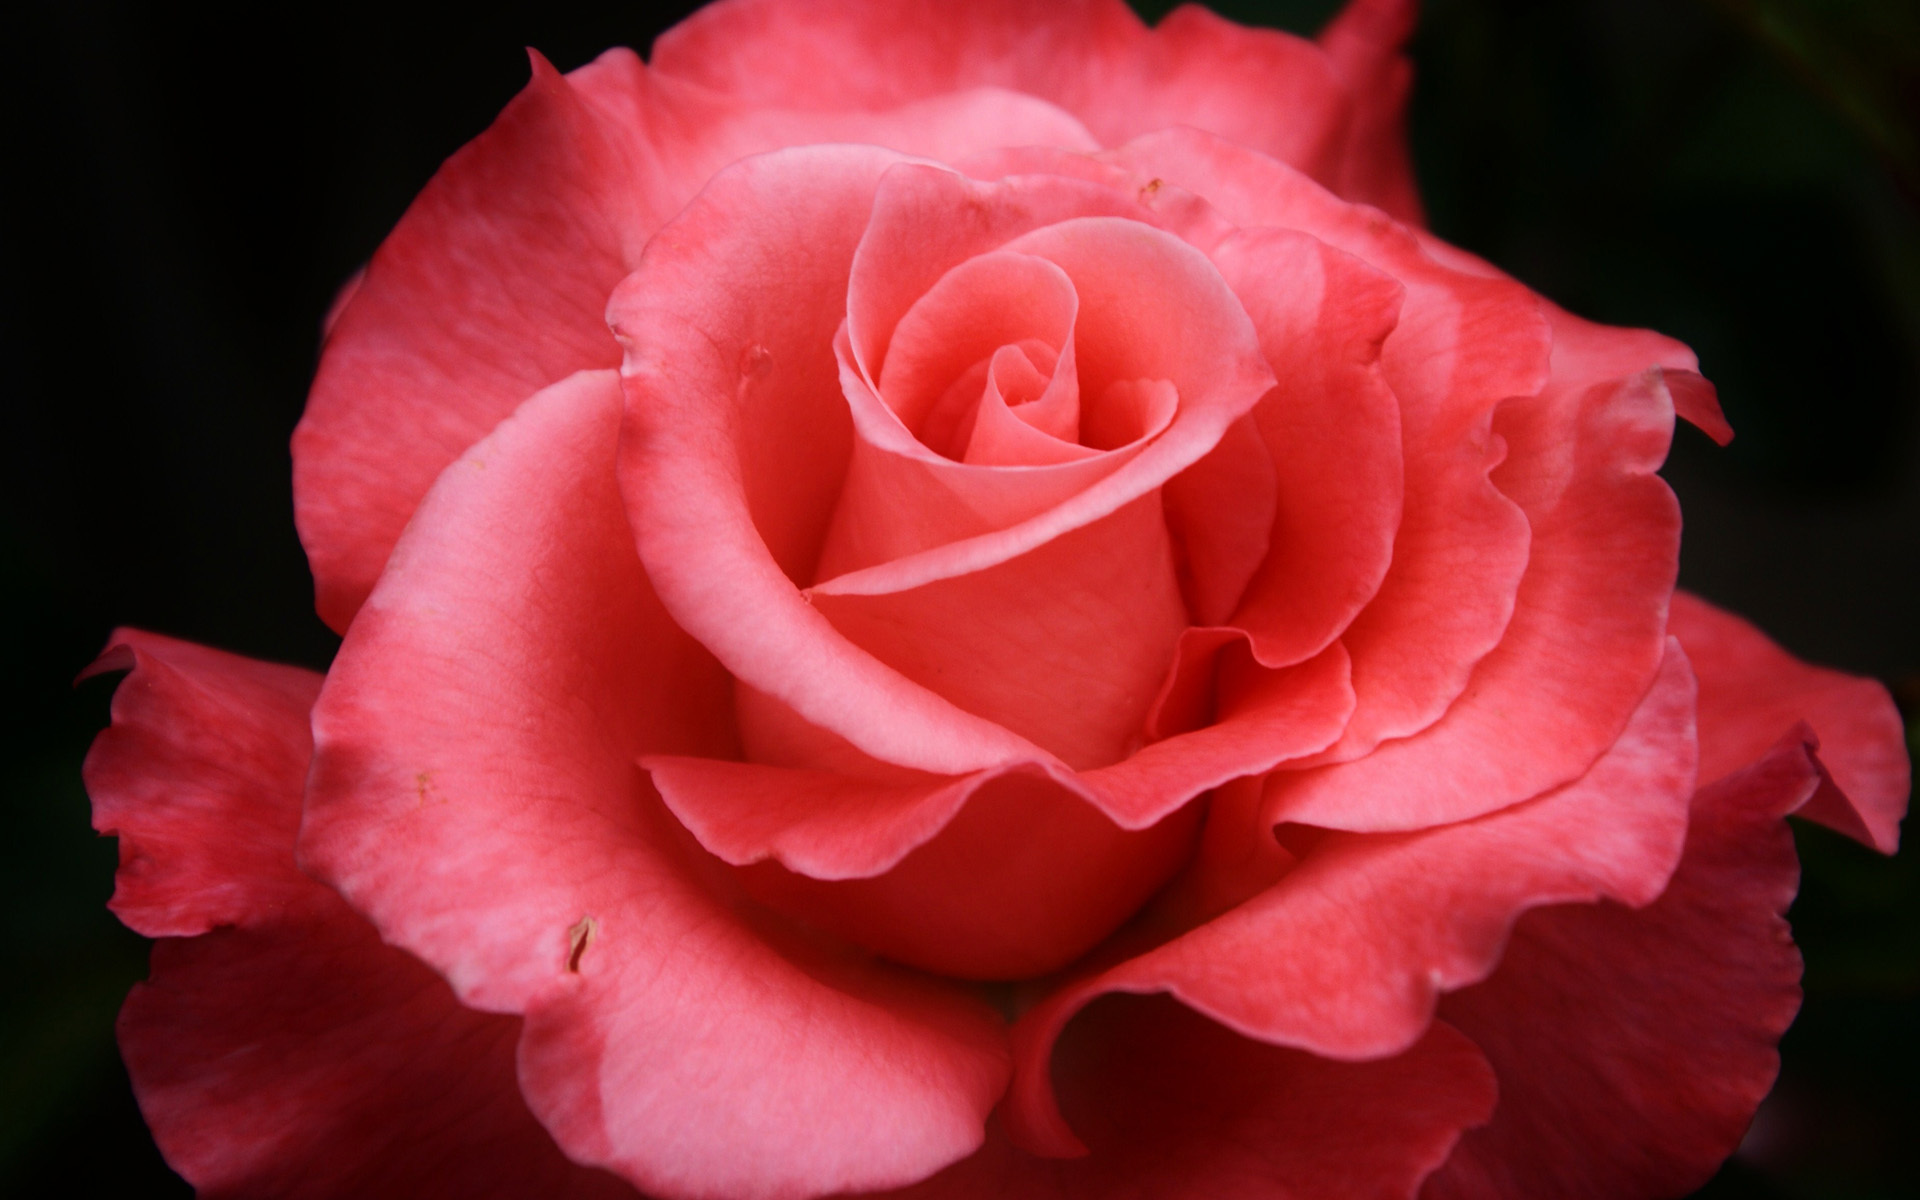 red rose live wallpaper download gratuito,fiore,rose da giardino,pianta fiorita,petalo,julia child rose